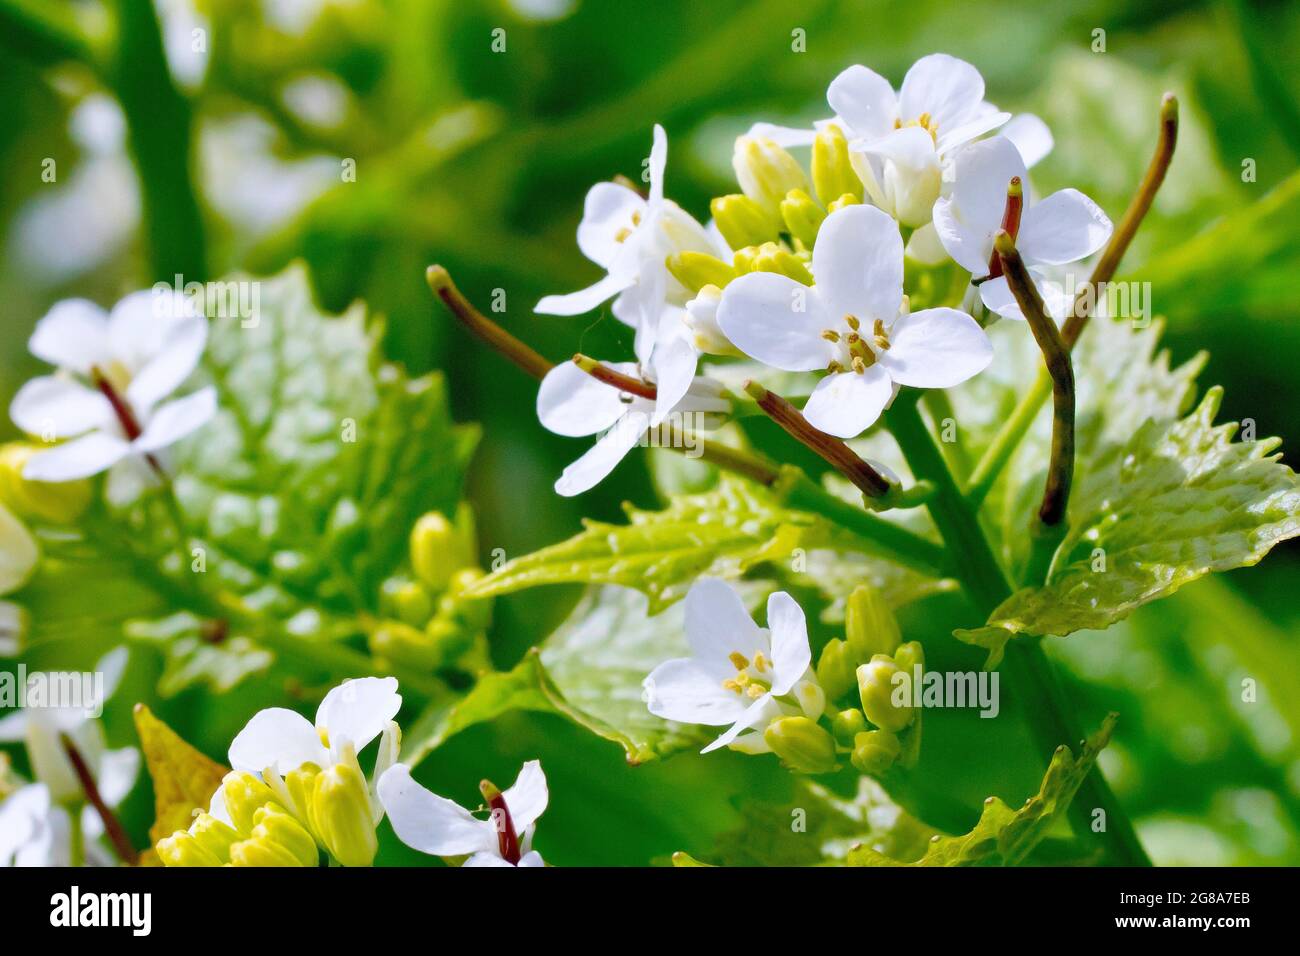 Knoblauchsenf (alliaria petiolata), auch bekannt als Jack by the Hedge, zeigt in Nahaufnahme die kleinen weißen Blüten und die Entwicklung von Samenkapseln. Stockfoto